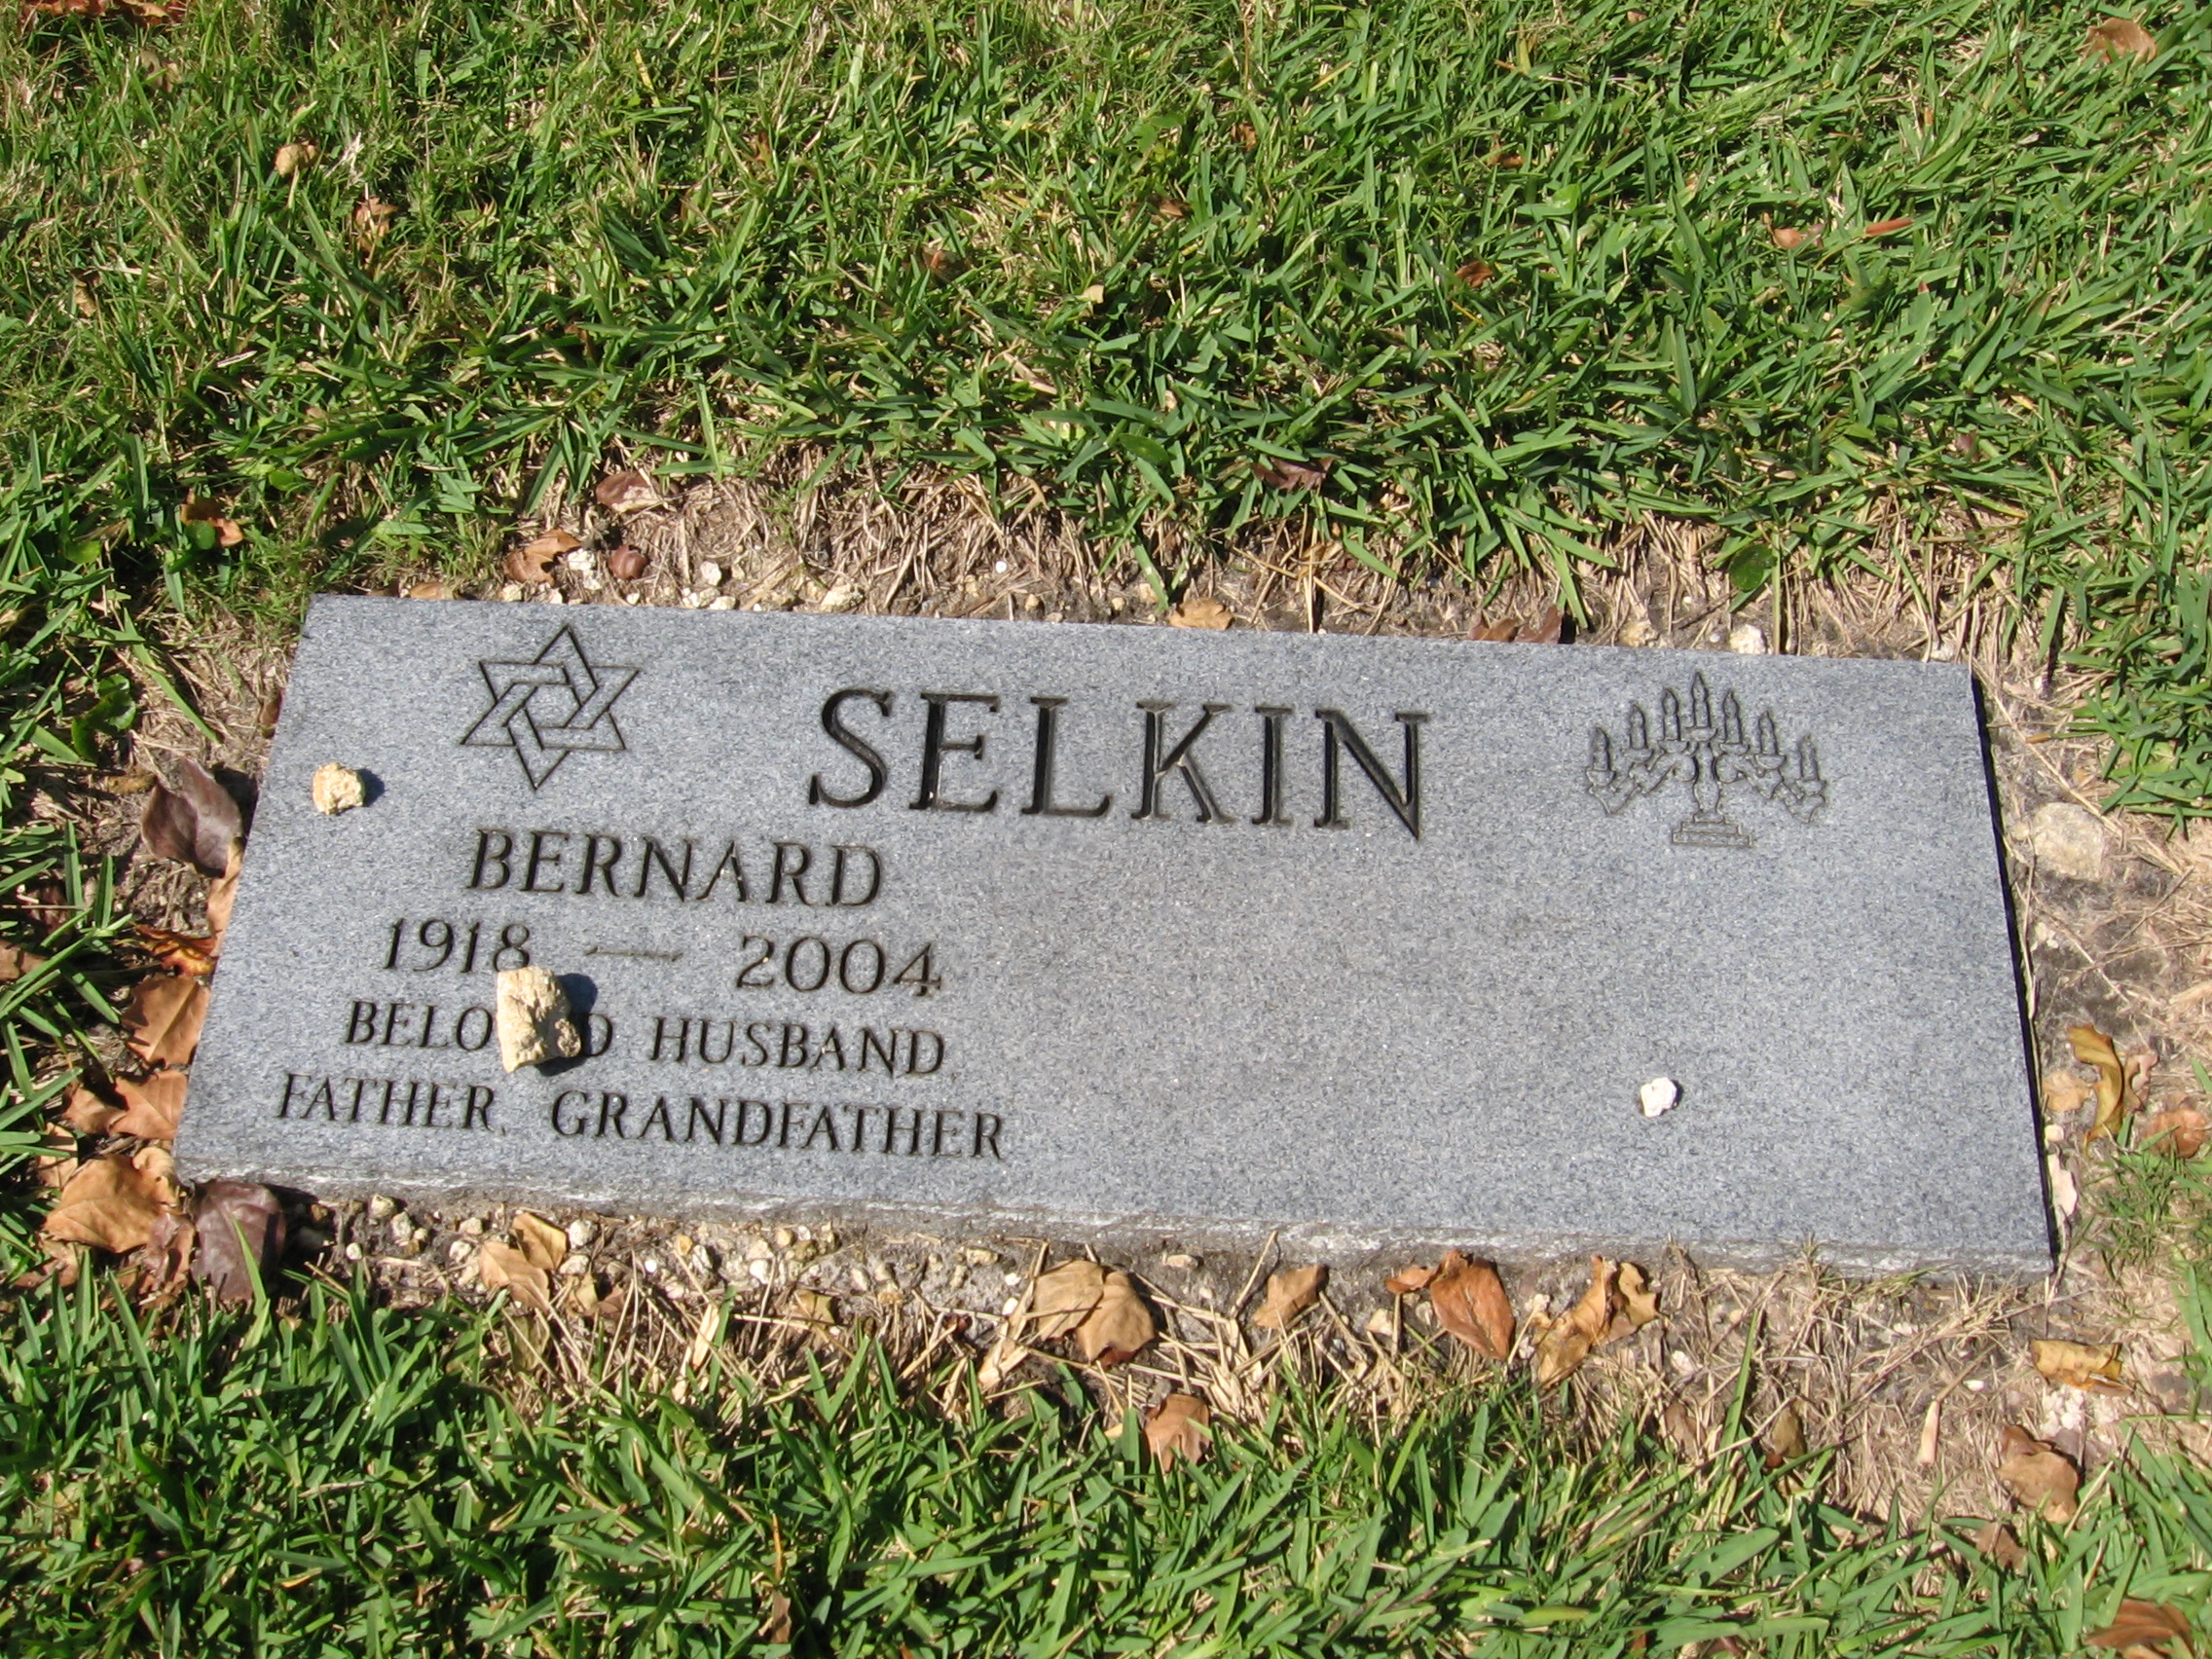 Bernard Selkin